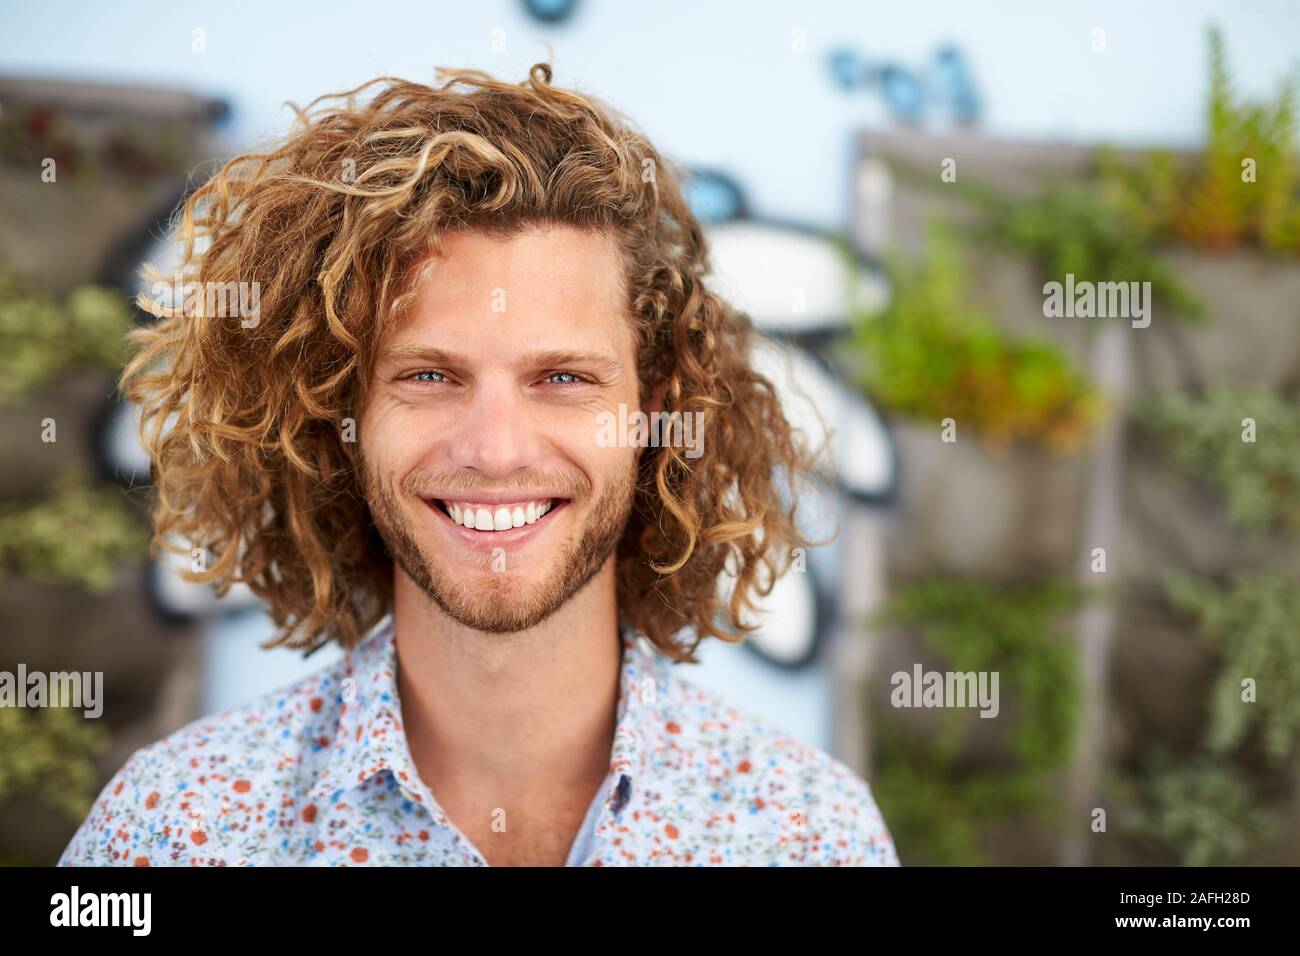 Im freien Kopf und Schultern Porträt von lächelnden jungen Mann Stockfoto